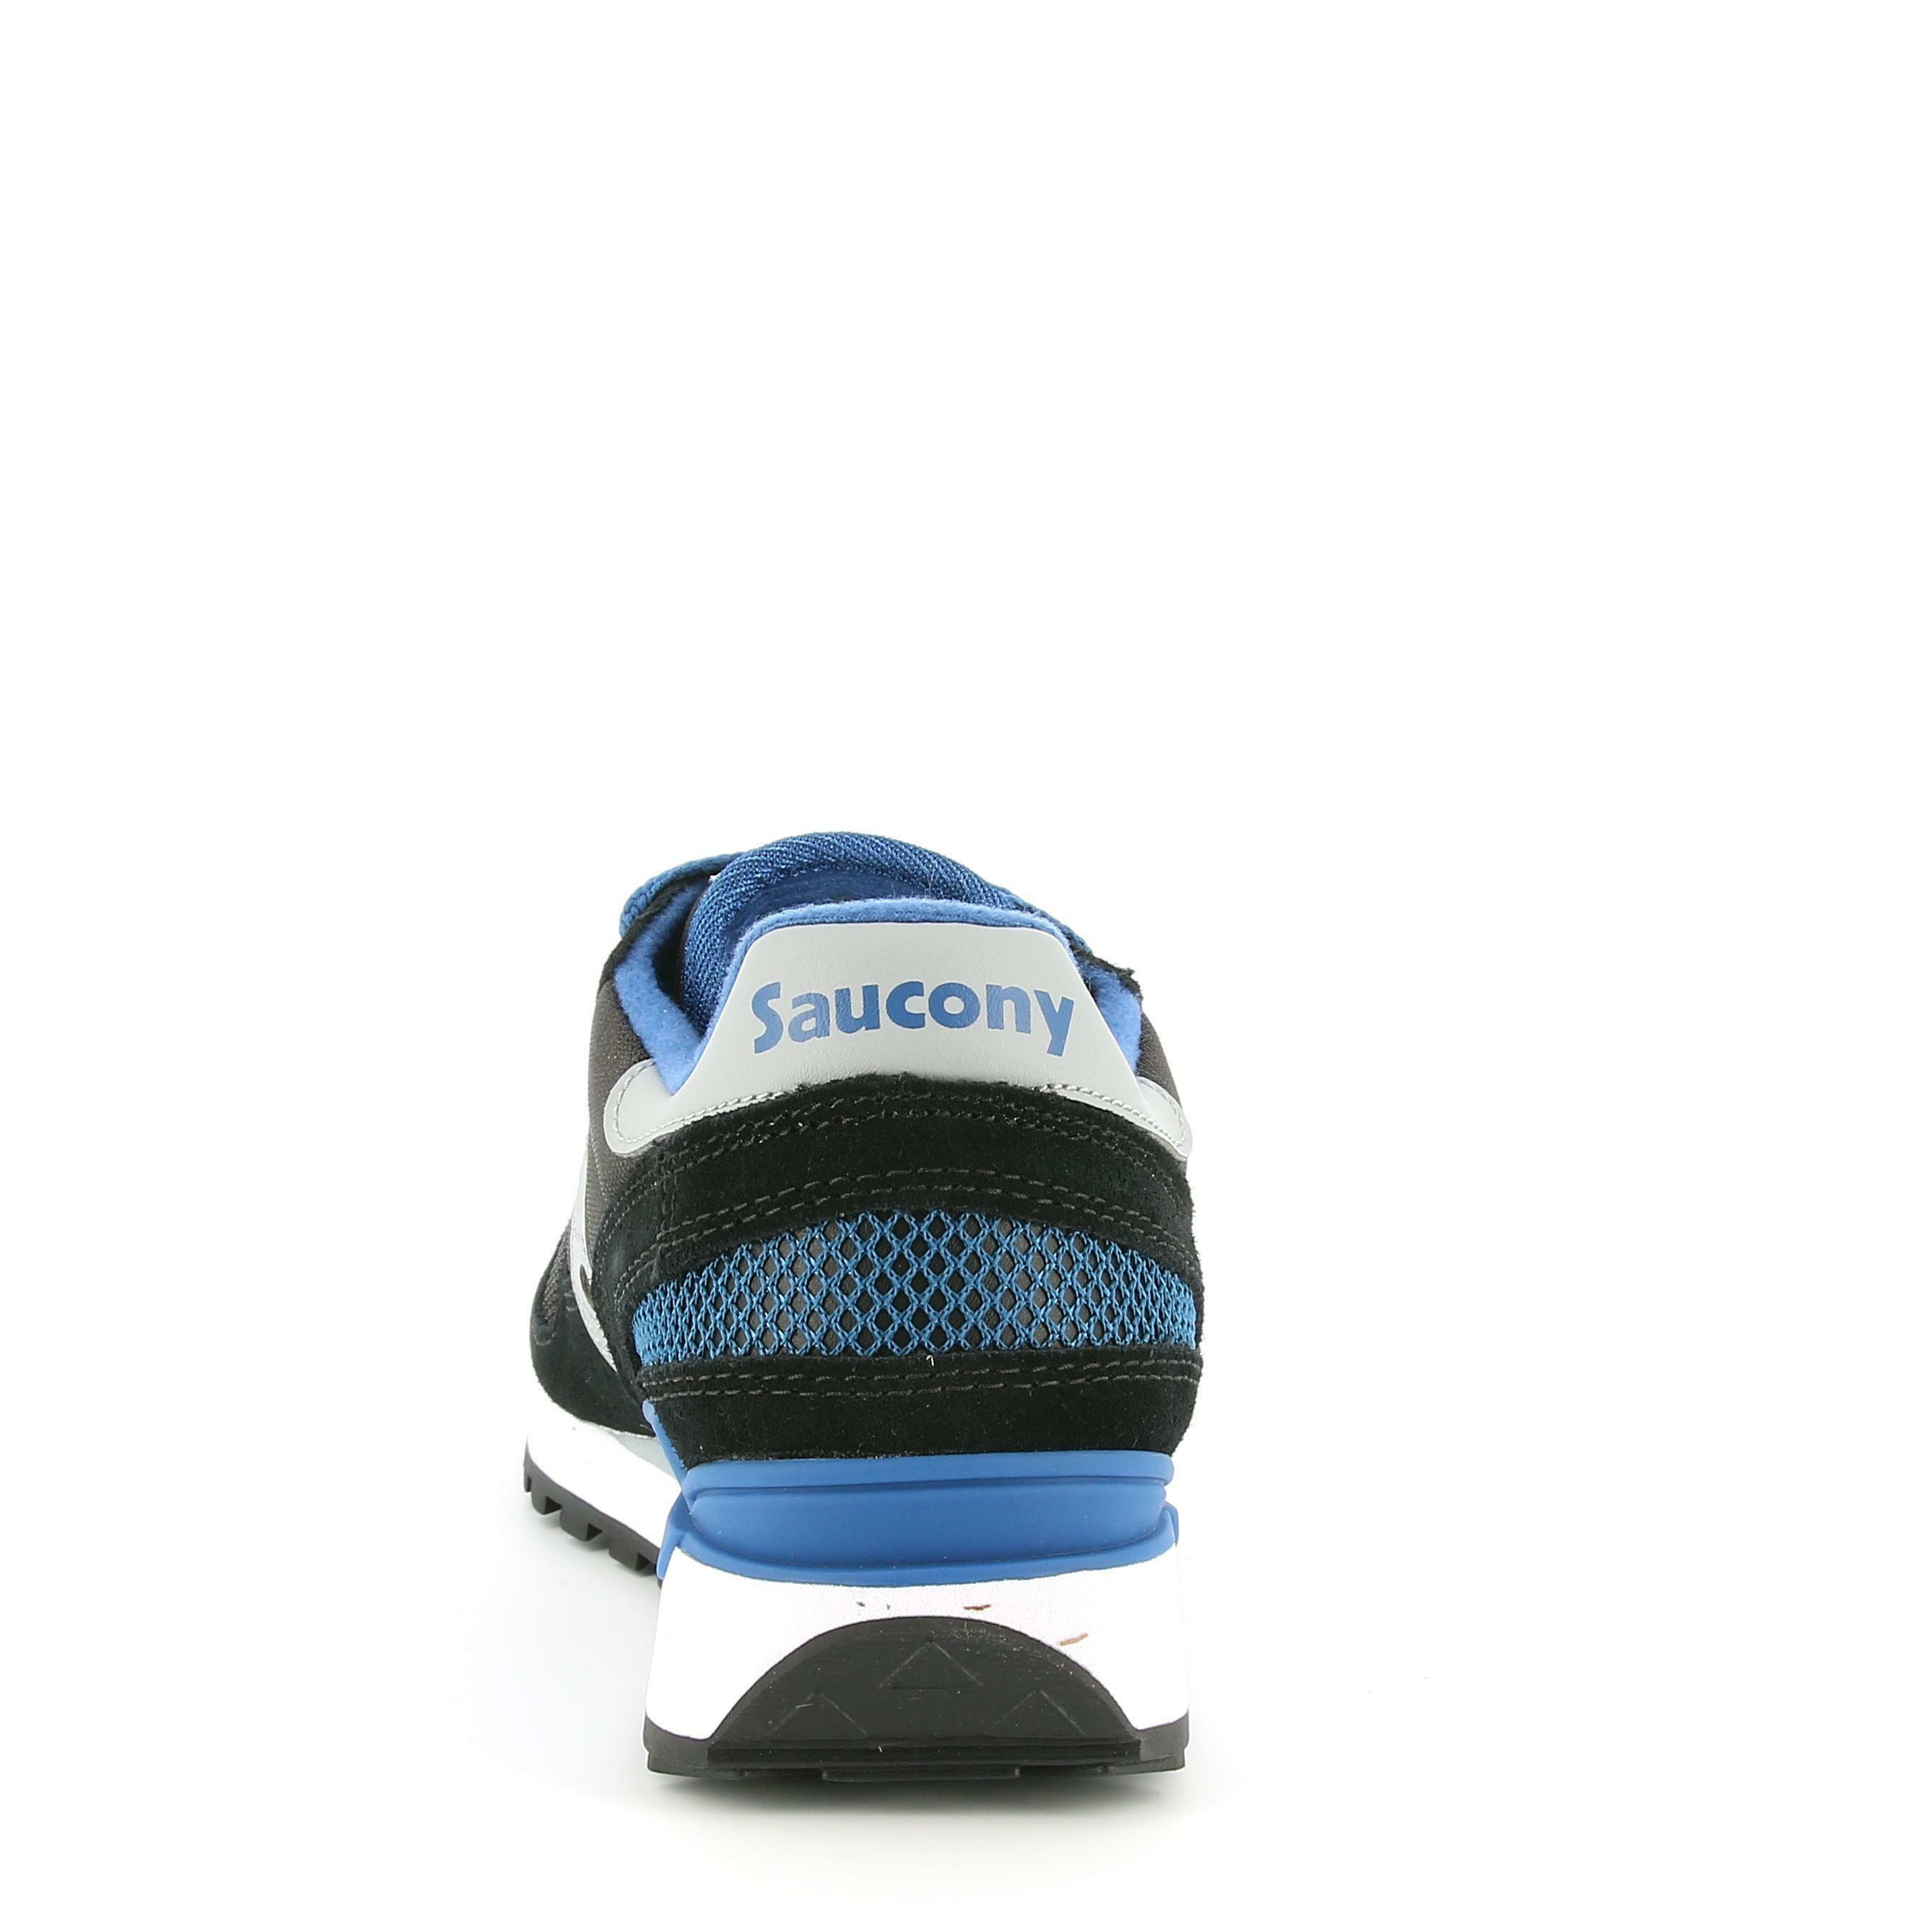 saucony sneaker saucony shadow original s2108-756. da uomo, colore nero/blu